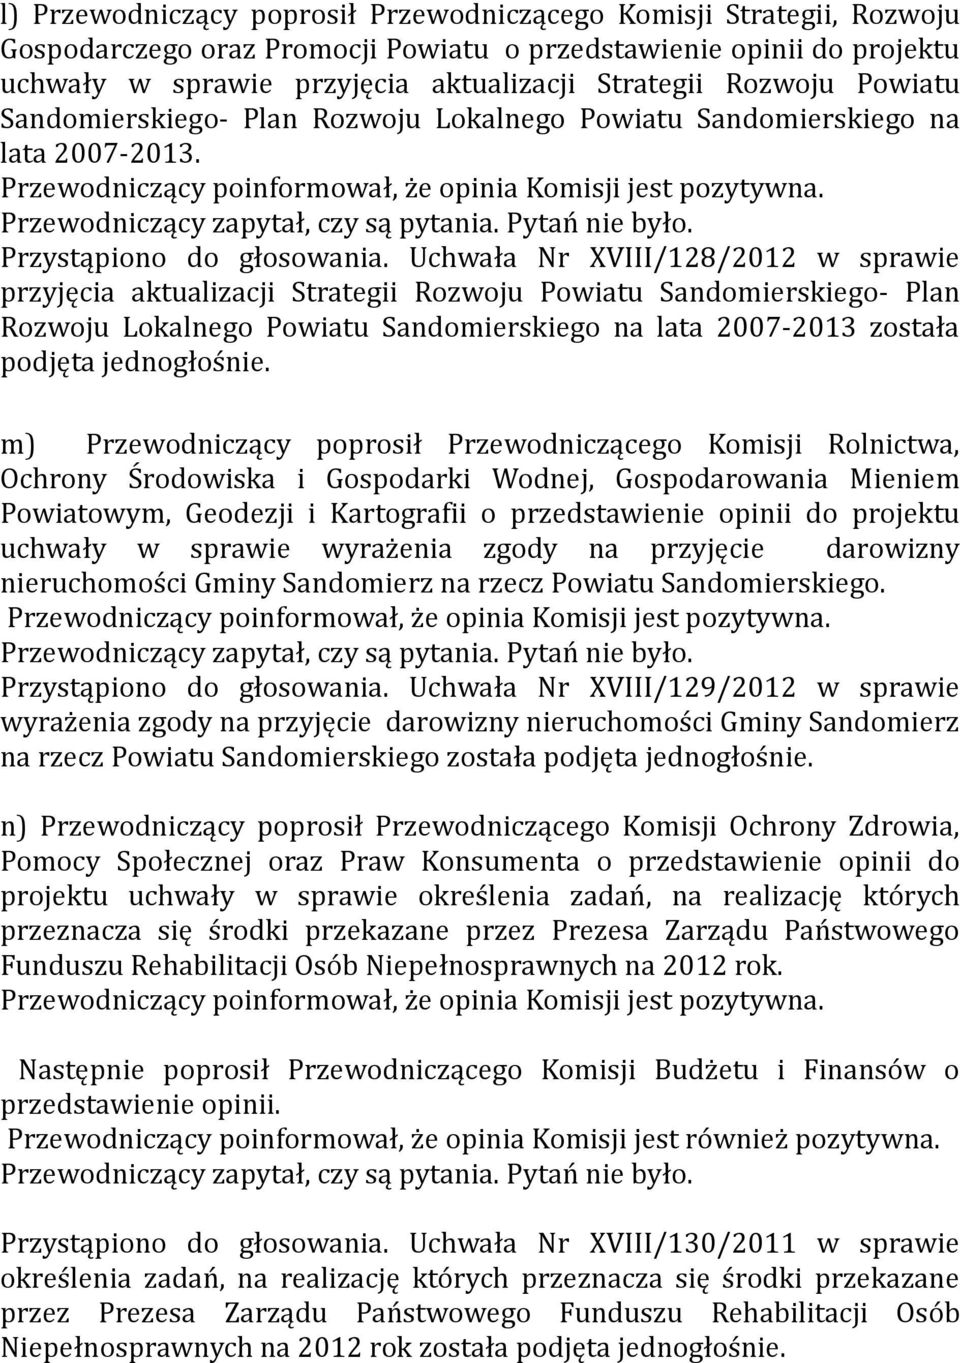 Uchwała Nr XVIII/128/2012 w sprawie przyjęcia aktualizacji Strategii Rozwoju Powiatu Sandomierskiego- Plan Rozwoju Lokalnego Powiatu Sandomierskiego na lata 2007-2013 została podjęta jednogłośnie.